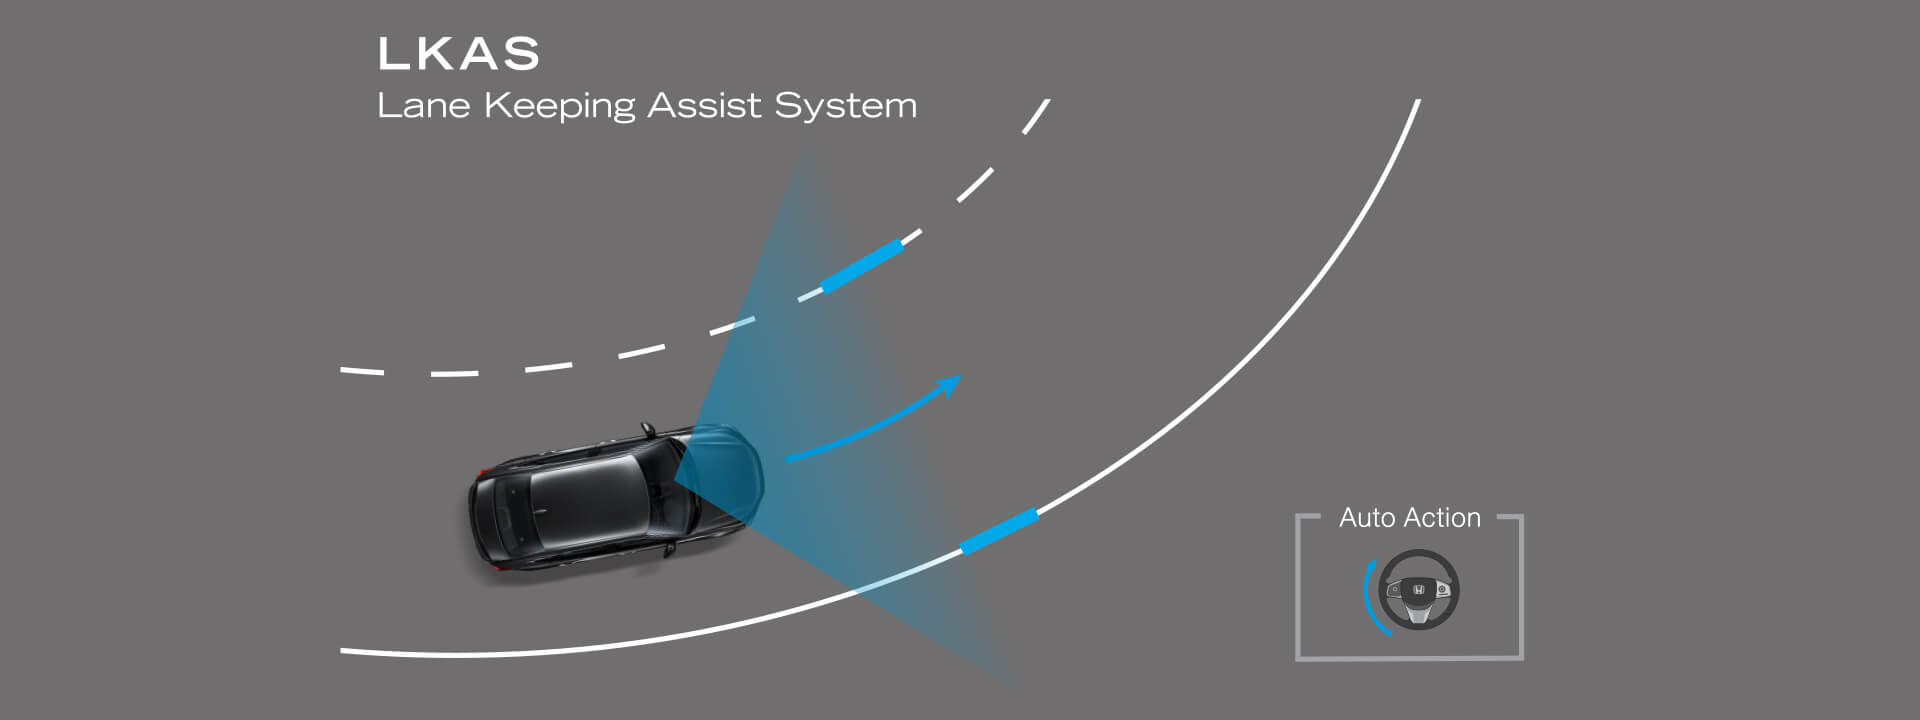 Lane Keeping Assist System (LKAS) ระบบช่วยควบคุมรถให้อยู่ในช่องทางเดินรถ